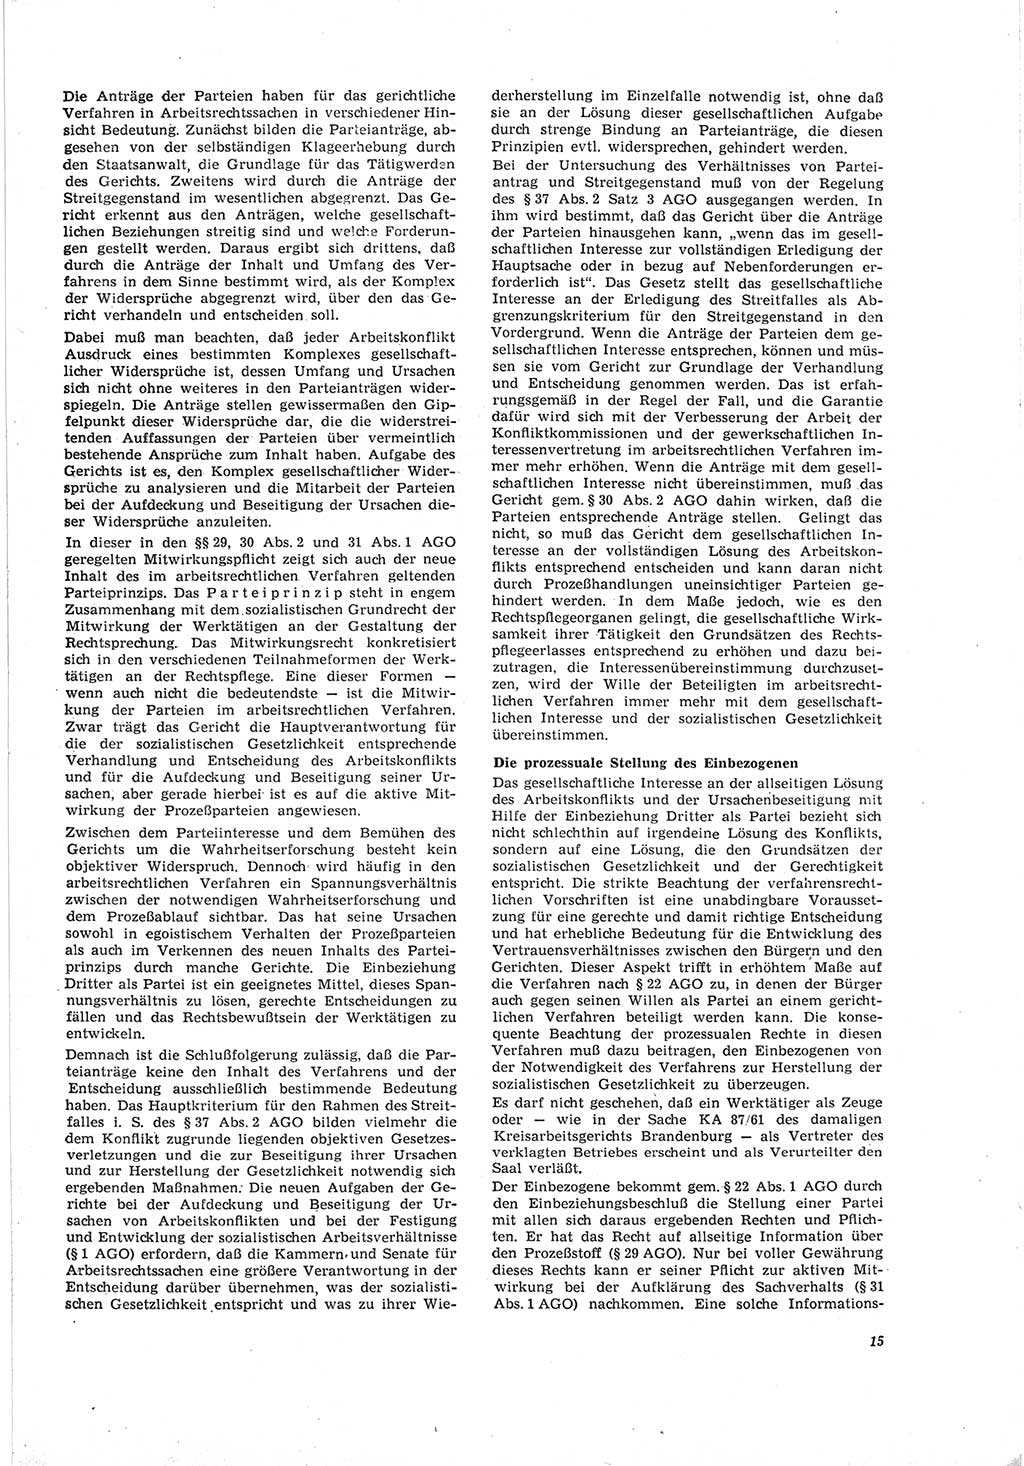 Neue Justiz (NJ), Zeitschrift für Recht und Rechtswissenschaft [Deutsche Demokratische Republik (DDR)], 19. Jahrgang 1965, Seite 15 (NJ DDR 1965, S. 15)